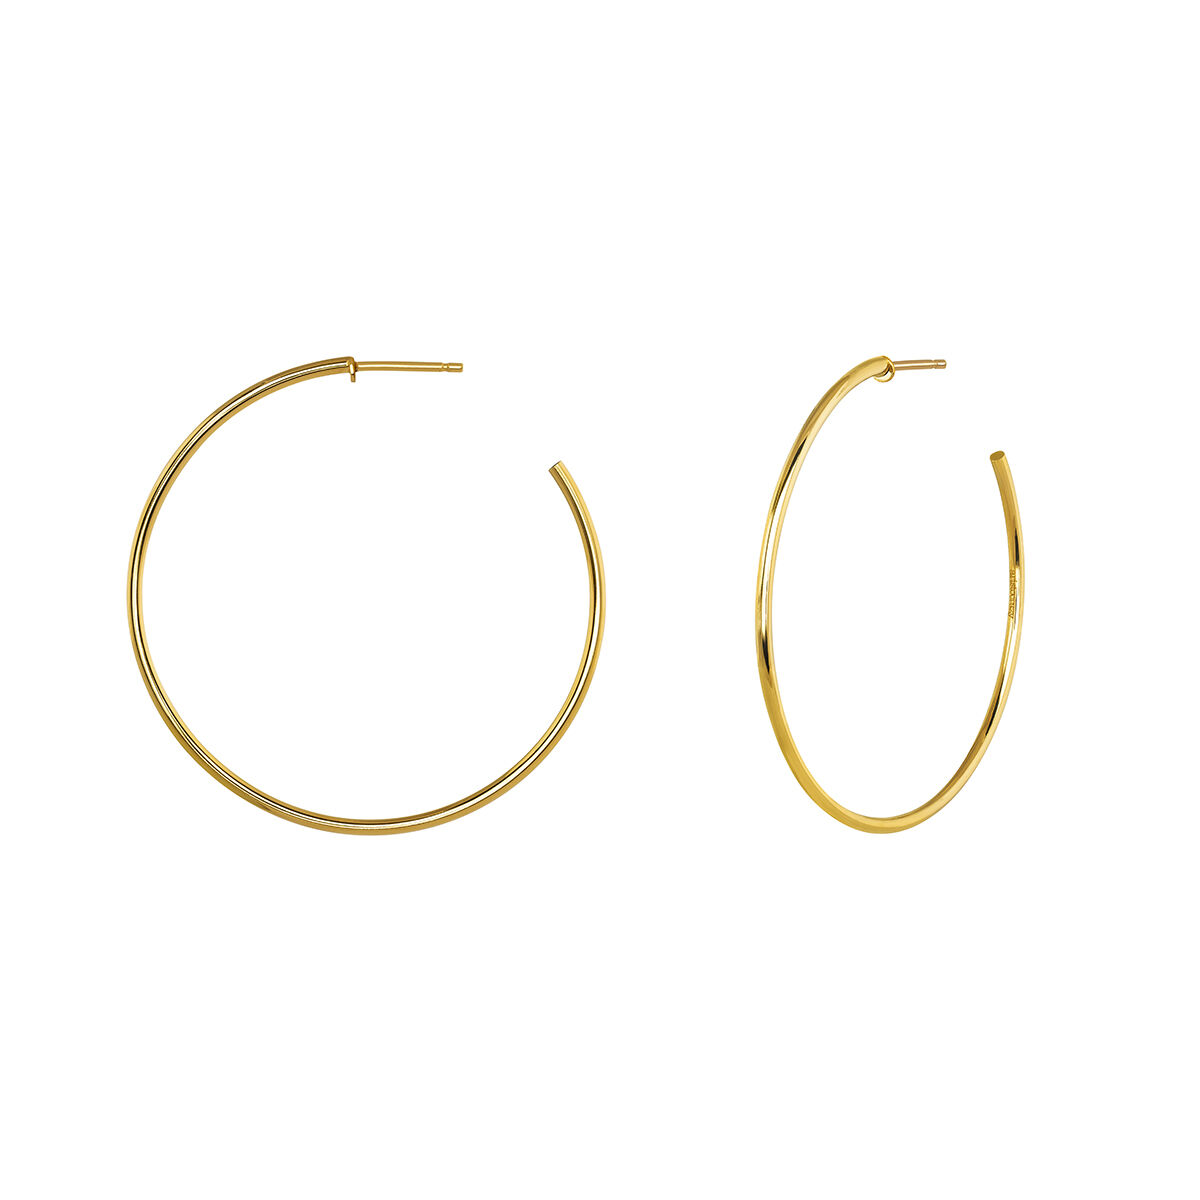 Thin gold plated hoop earrings , J04191-02, hi-res